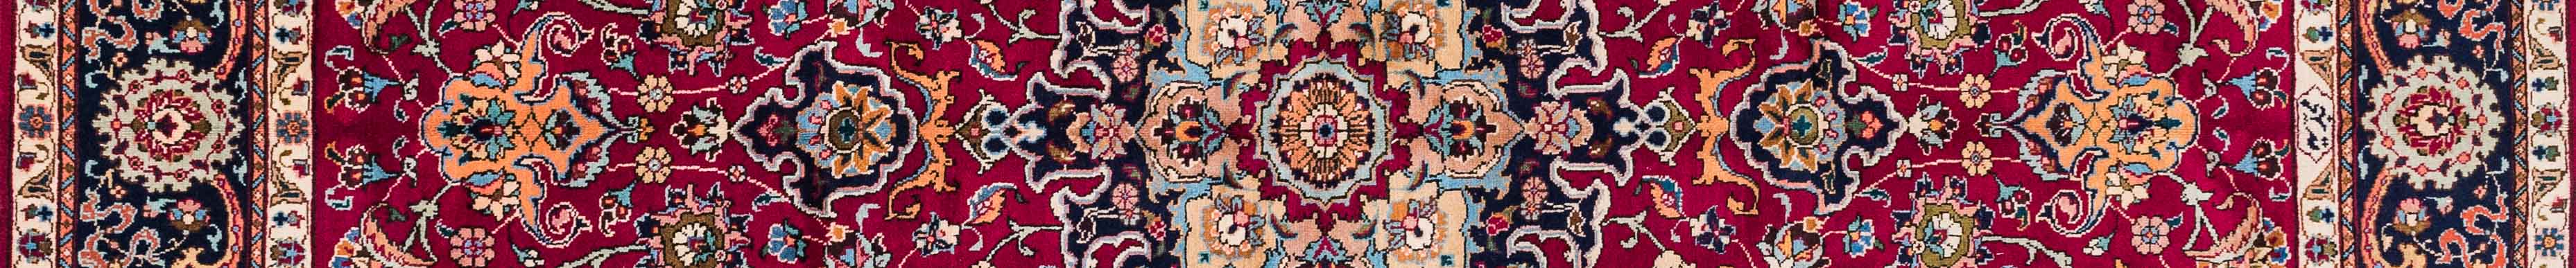 Tabriz Persian Carpet Rug N1Carpet Canada Montreal Tapis Persan 2500